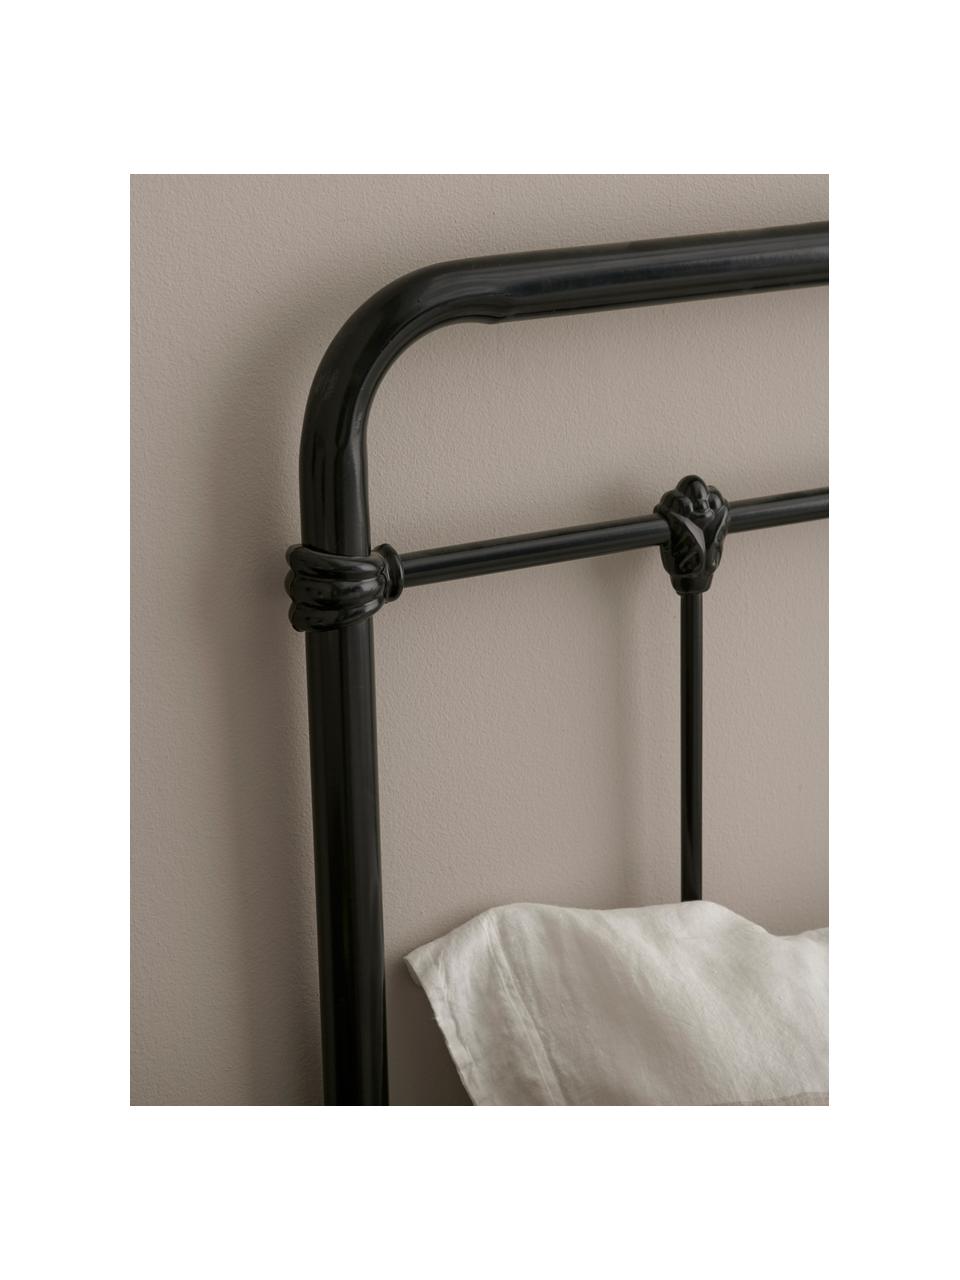 Zagłówek do łóżka z metalu Industrial, Metal malowany proszkowo, Czarny, S 189 x W 114 cm